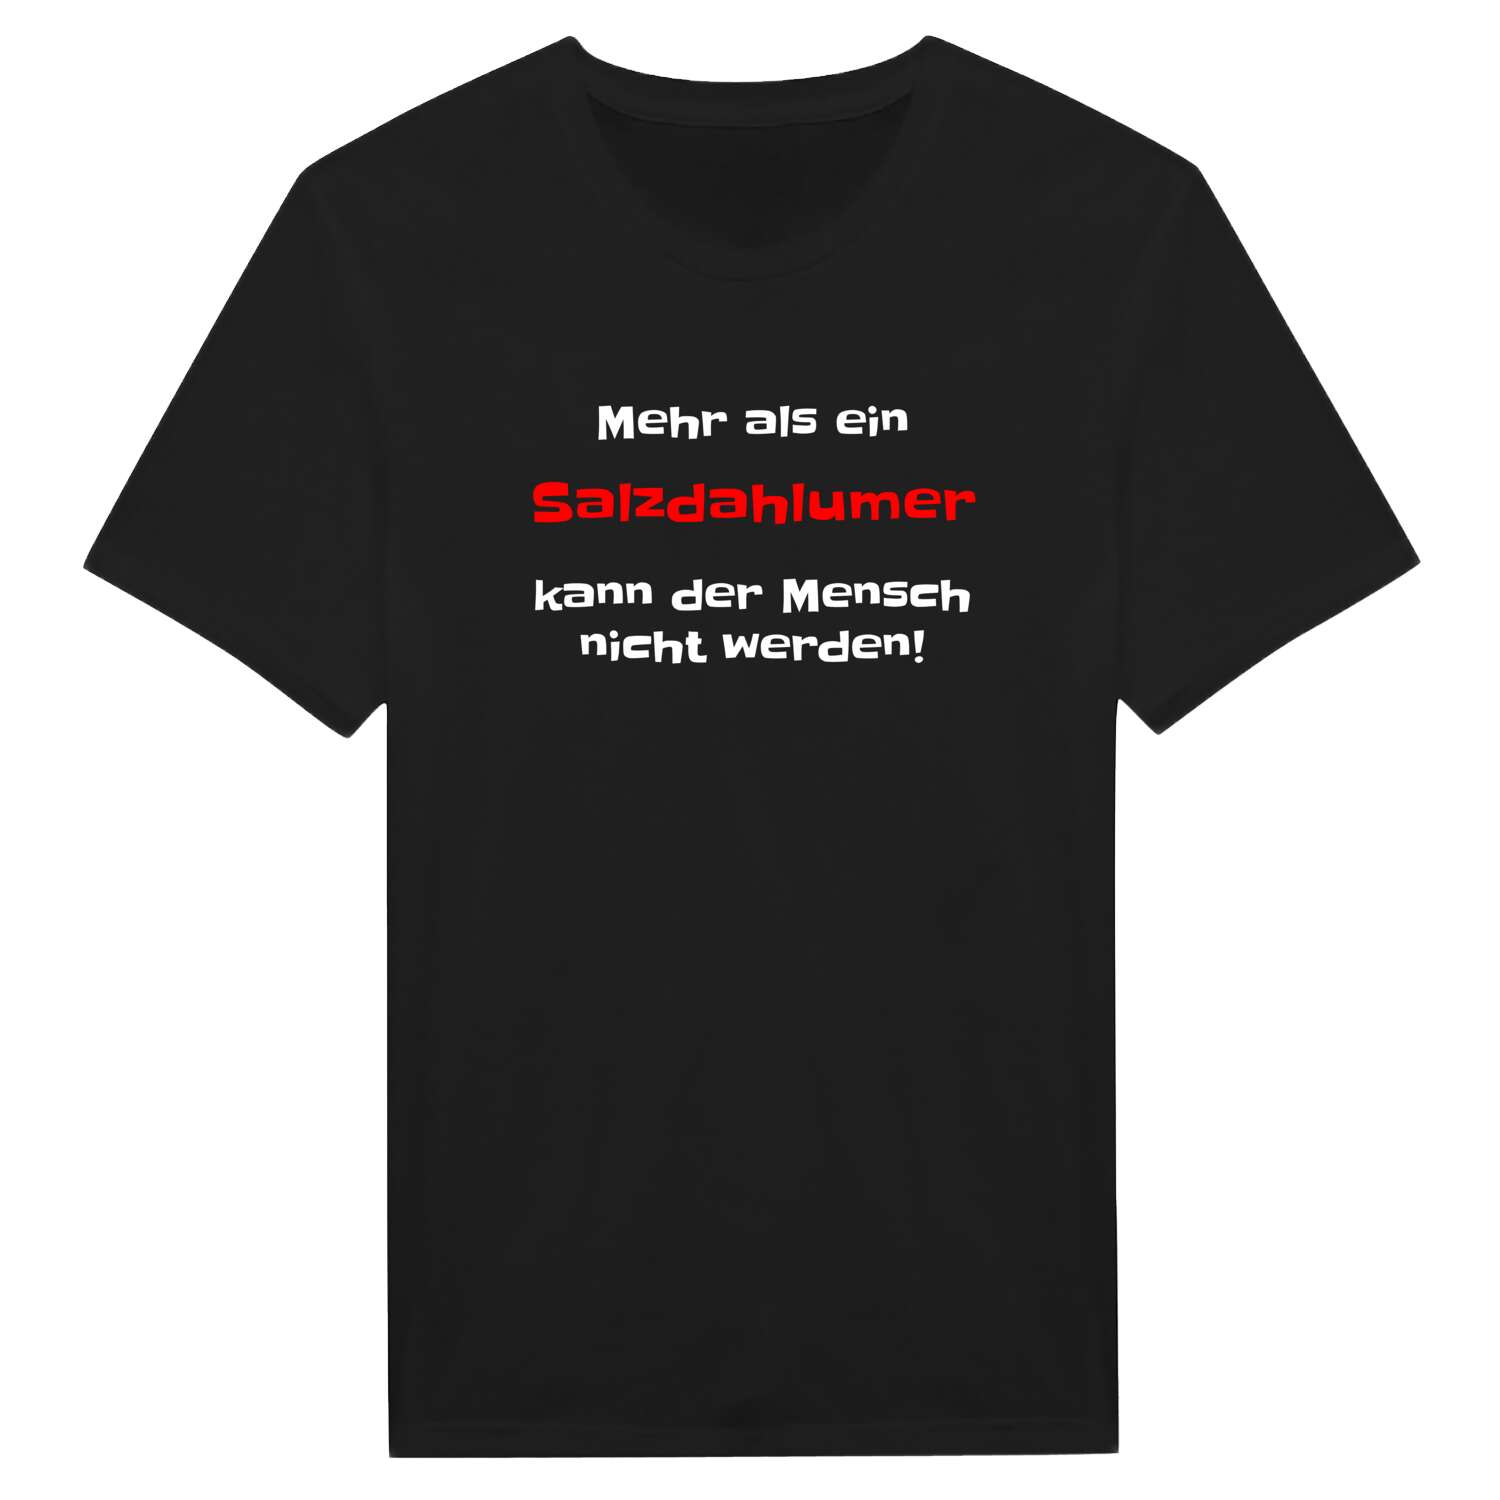 Salzdahlum T-Shirt »Mehr als ein«